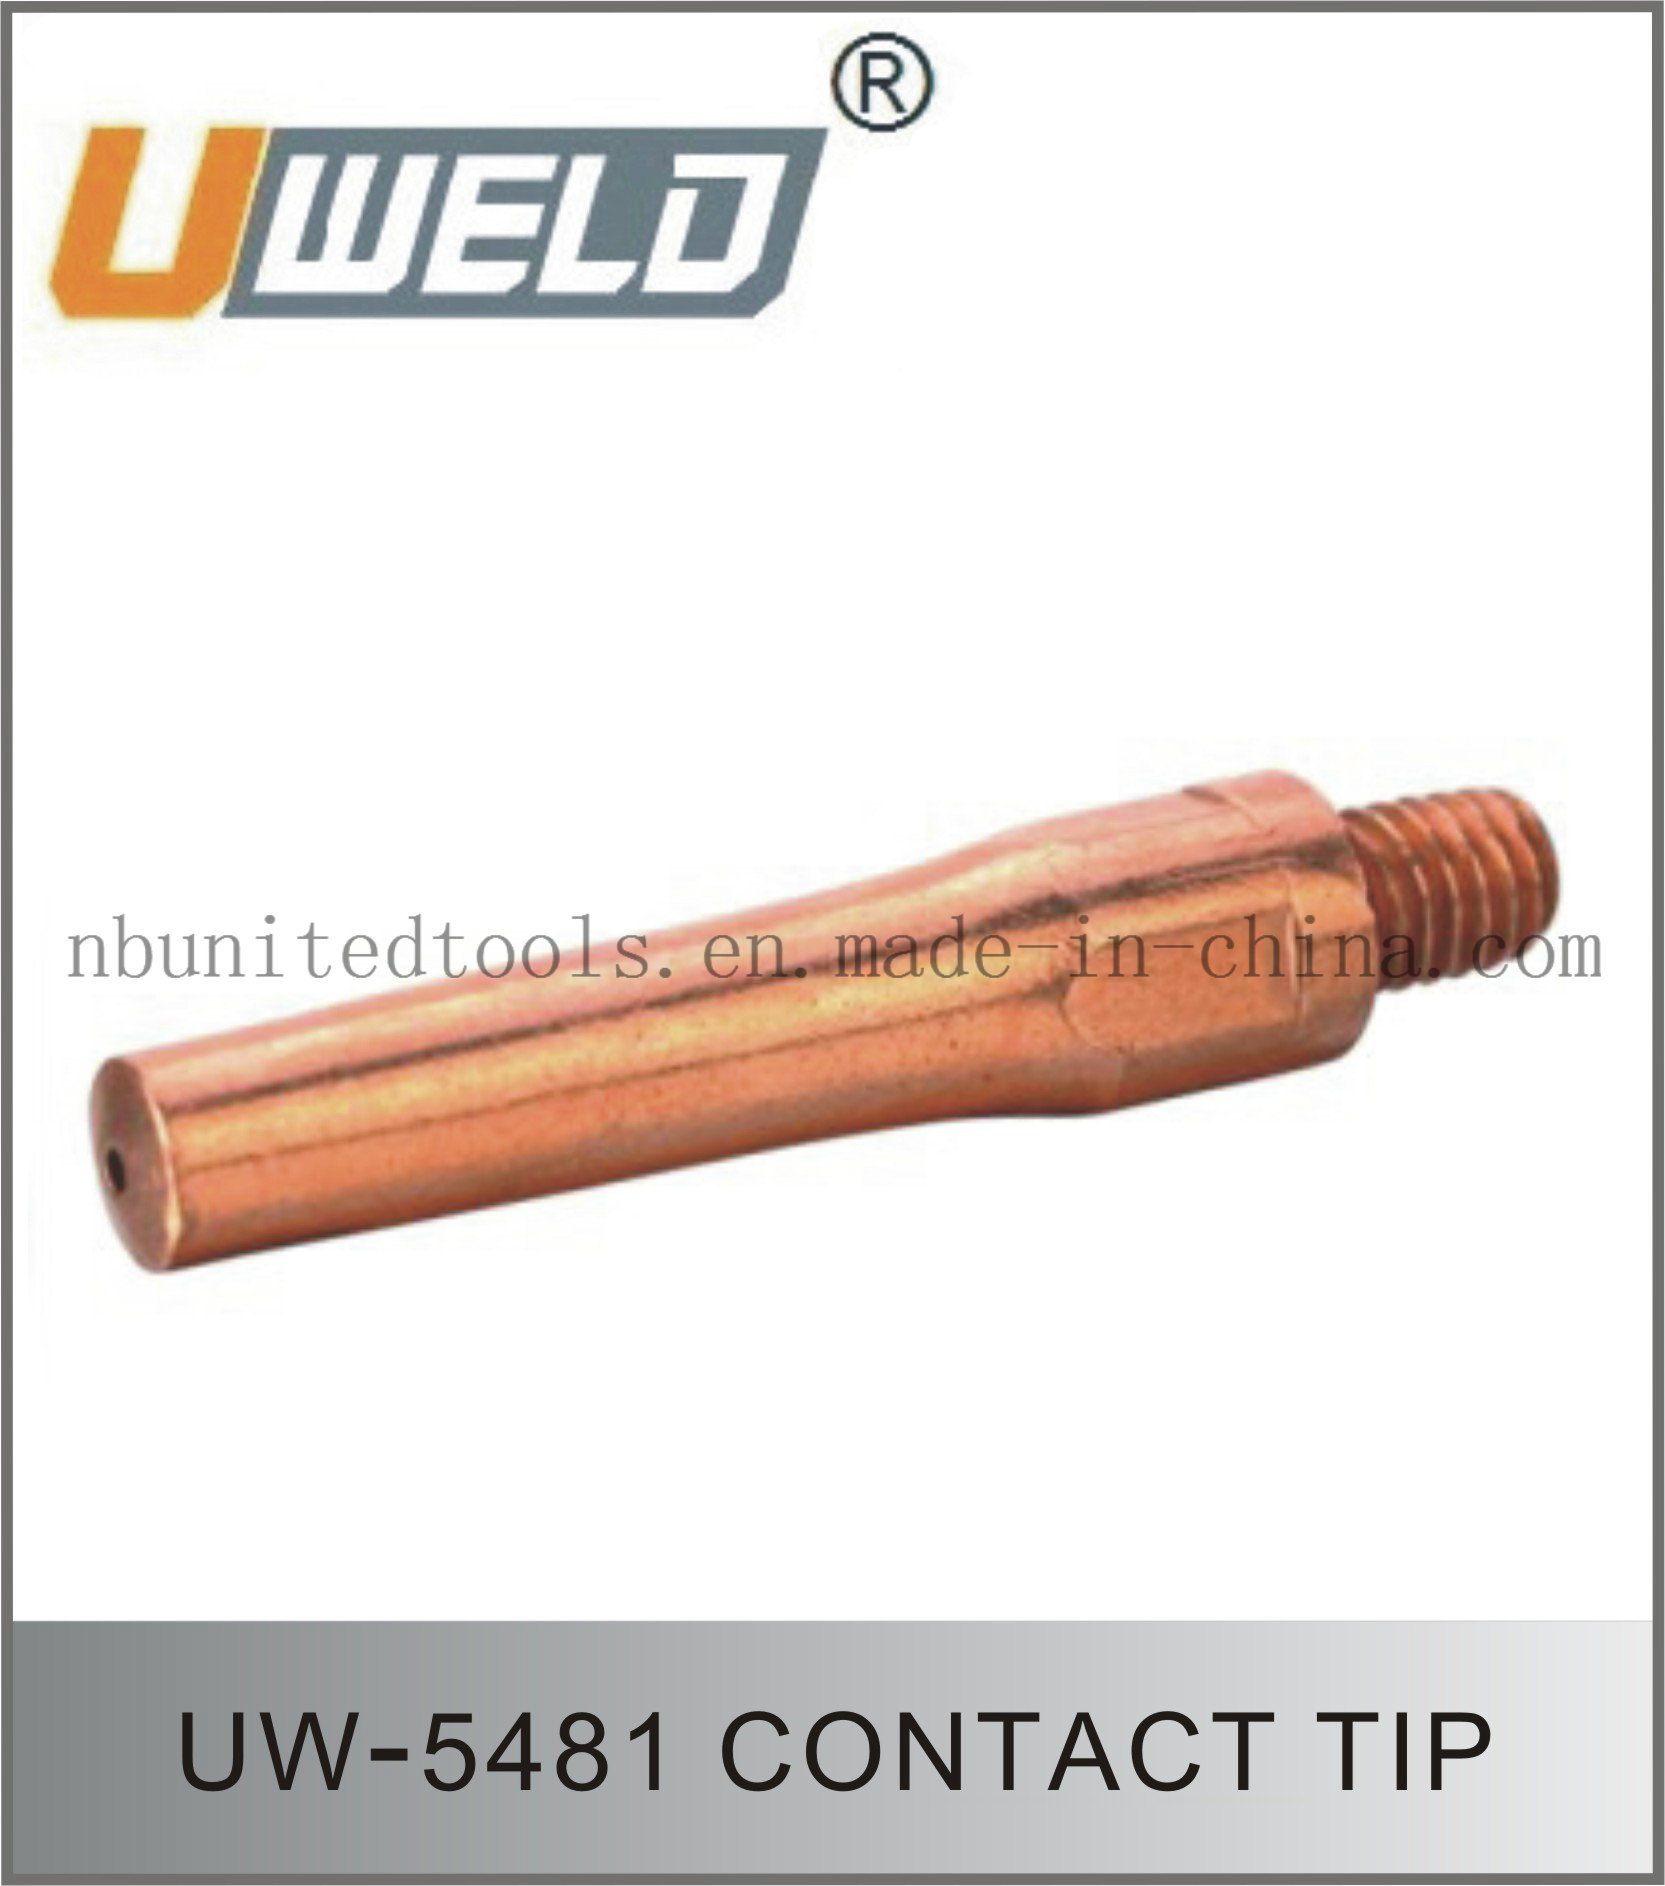 Contact Tips Uw-5481